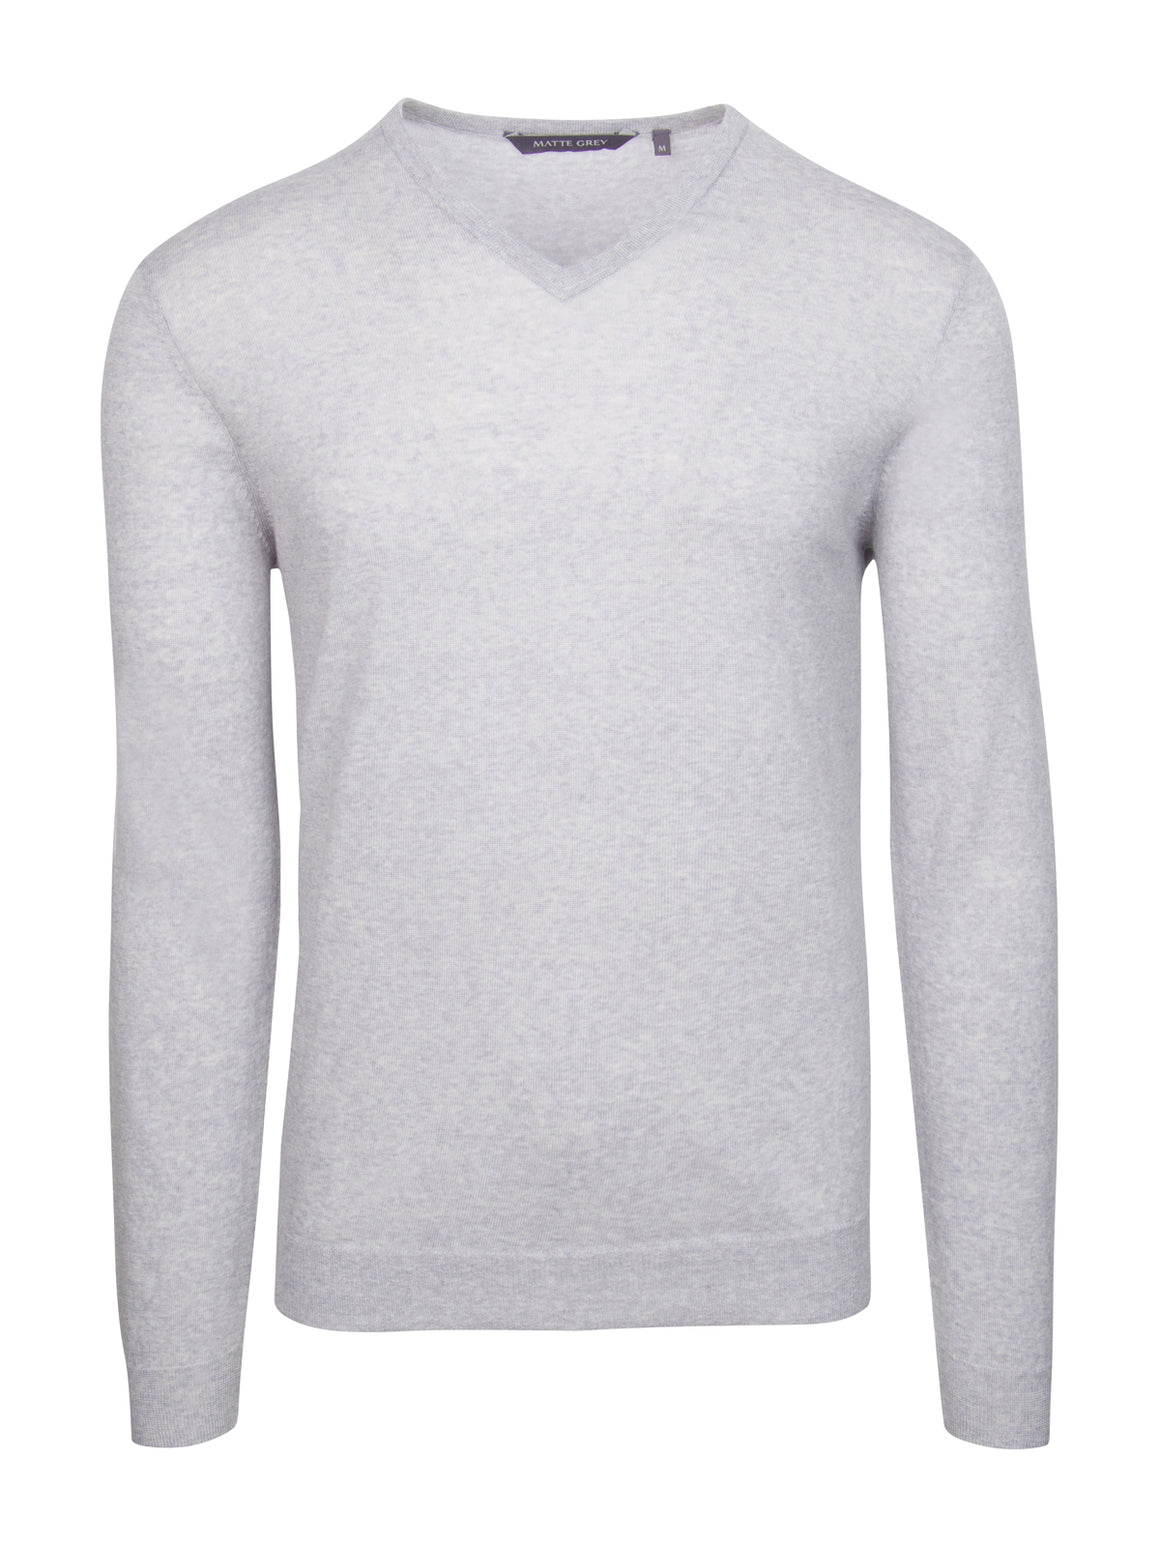 Ridge Long Sleeve V-Neck Sweater - Gainsburo Heather